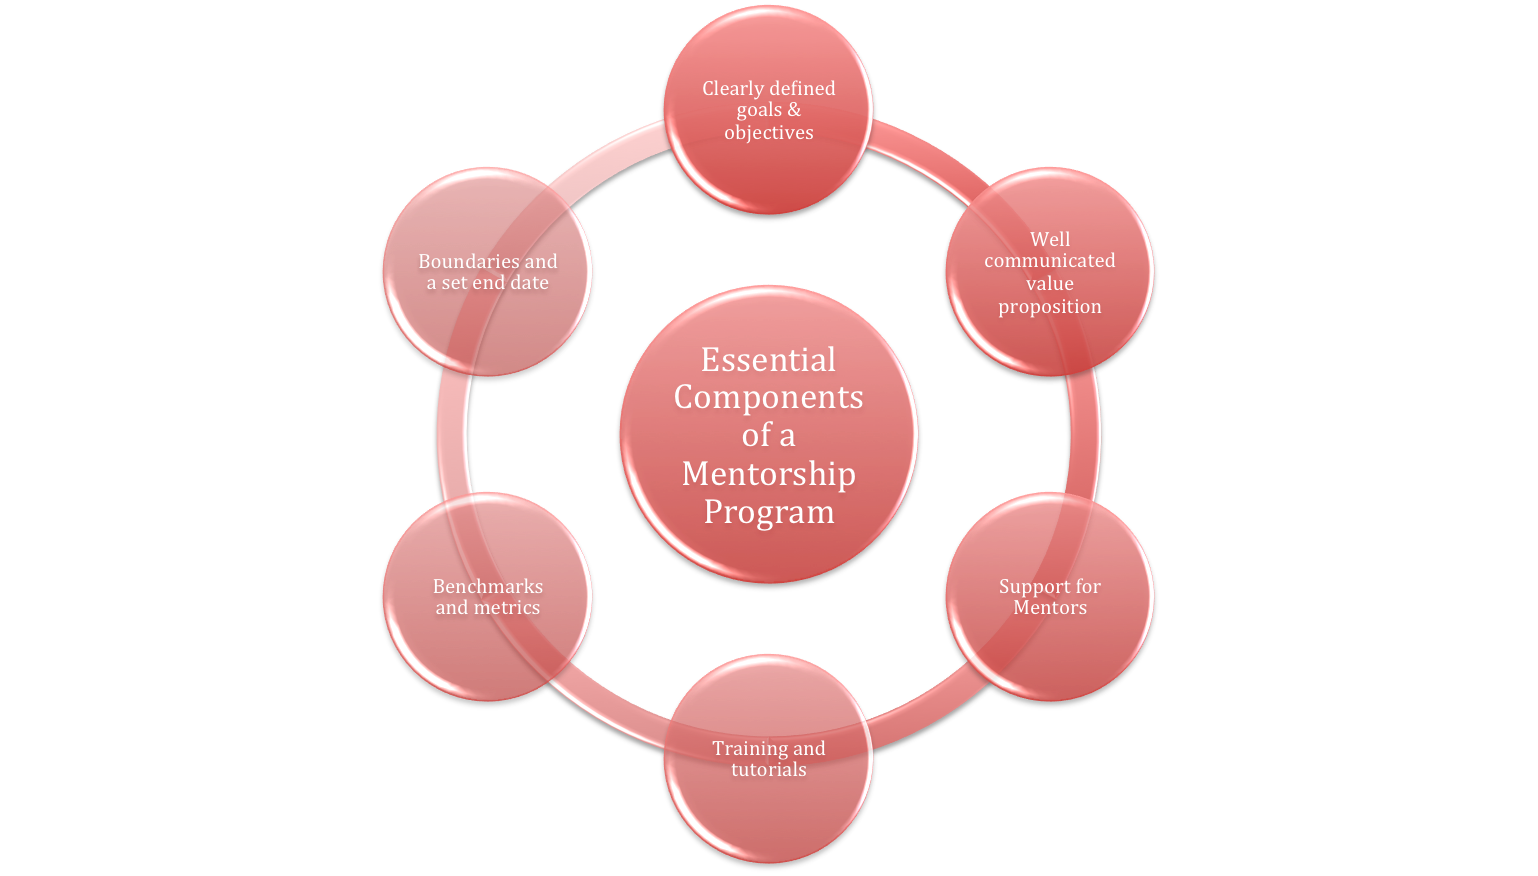 Essential Components of a Mentorship Program